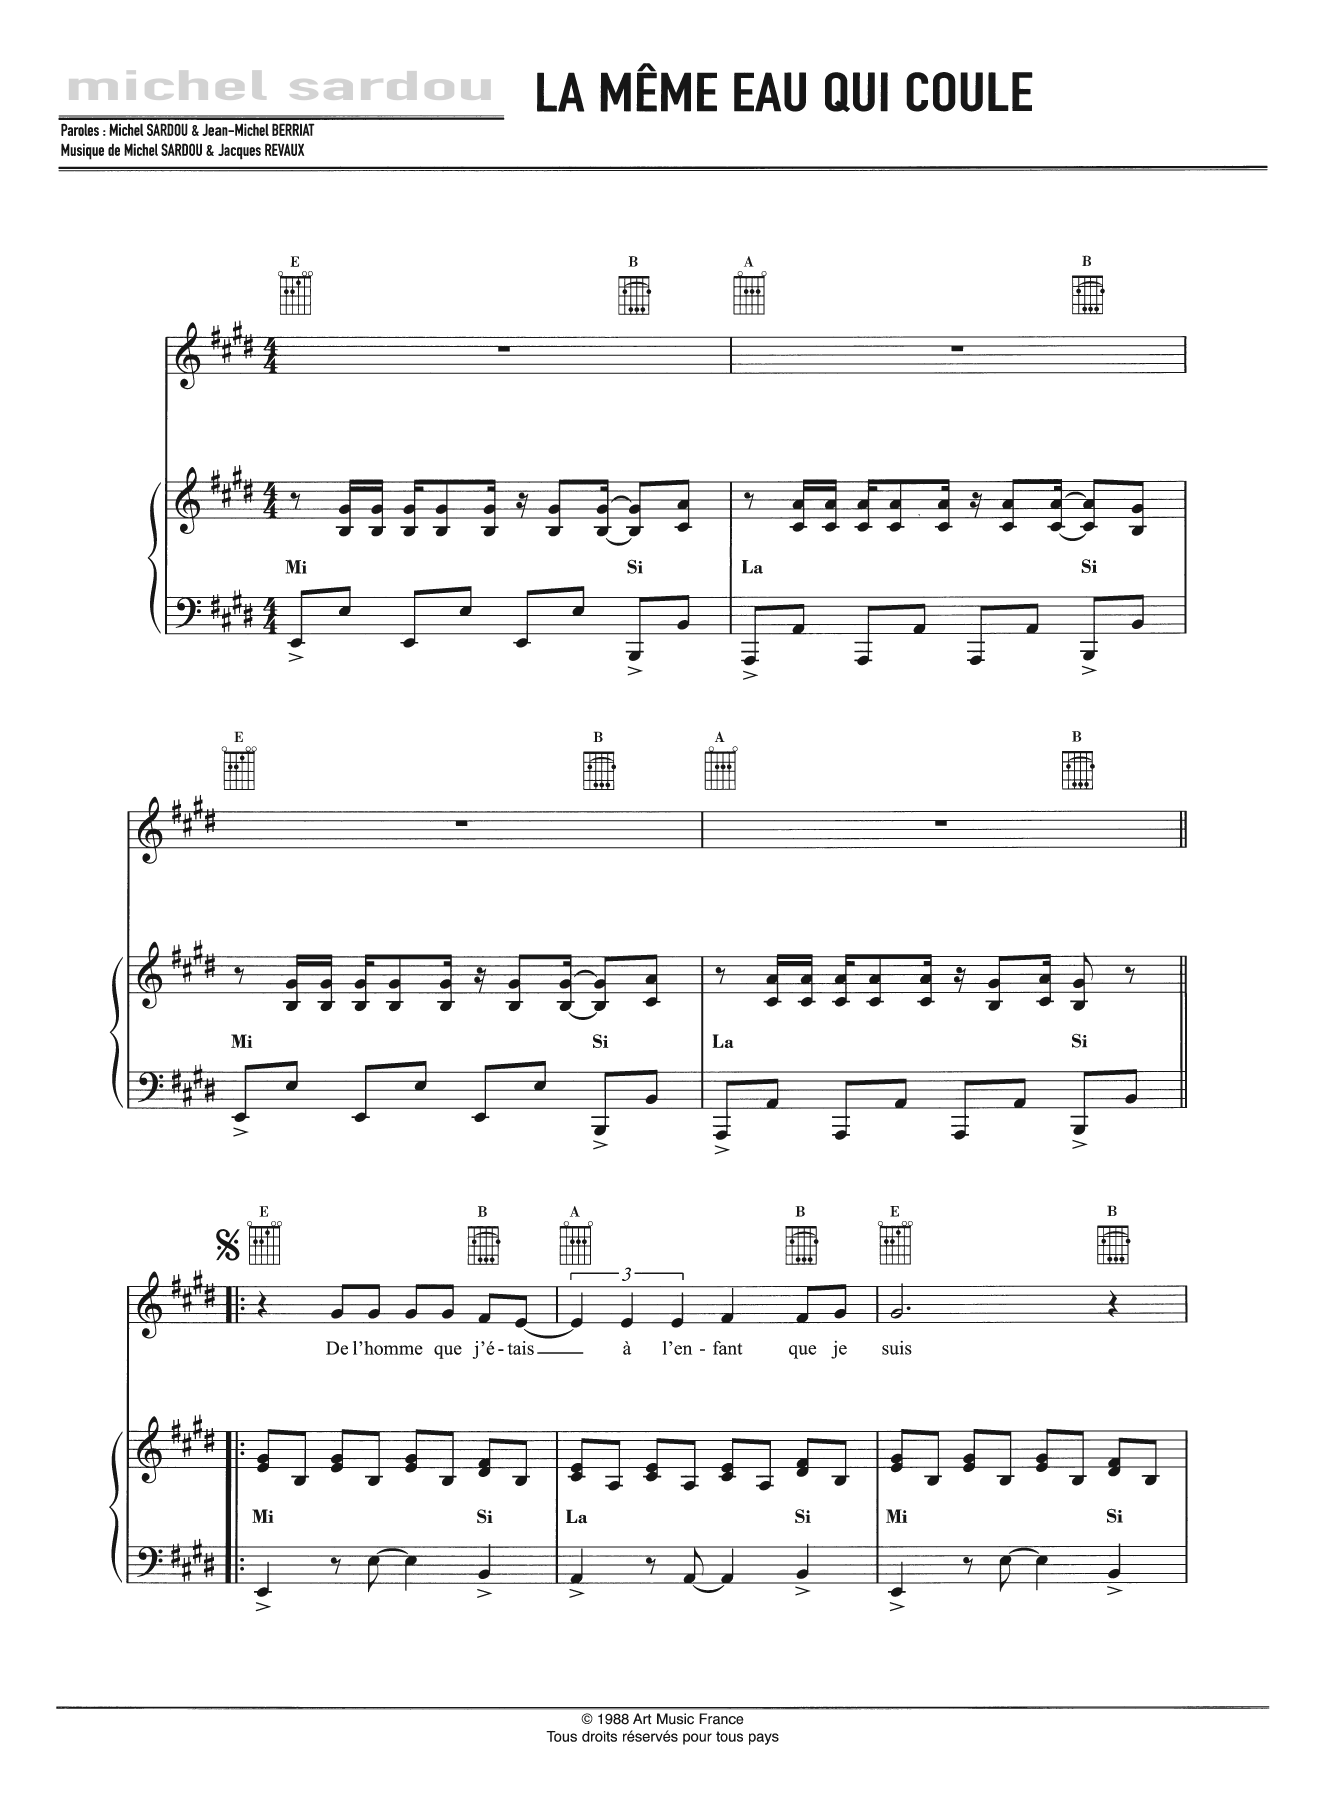 Michel Sardou La Meme Eau Qui Coule Sheet Music Notes & Chords for Piano, Vocal & Guitar - Download or Print PDF